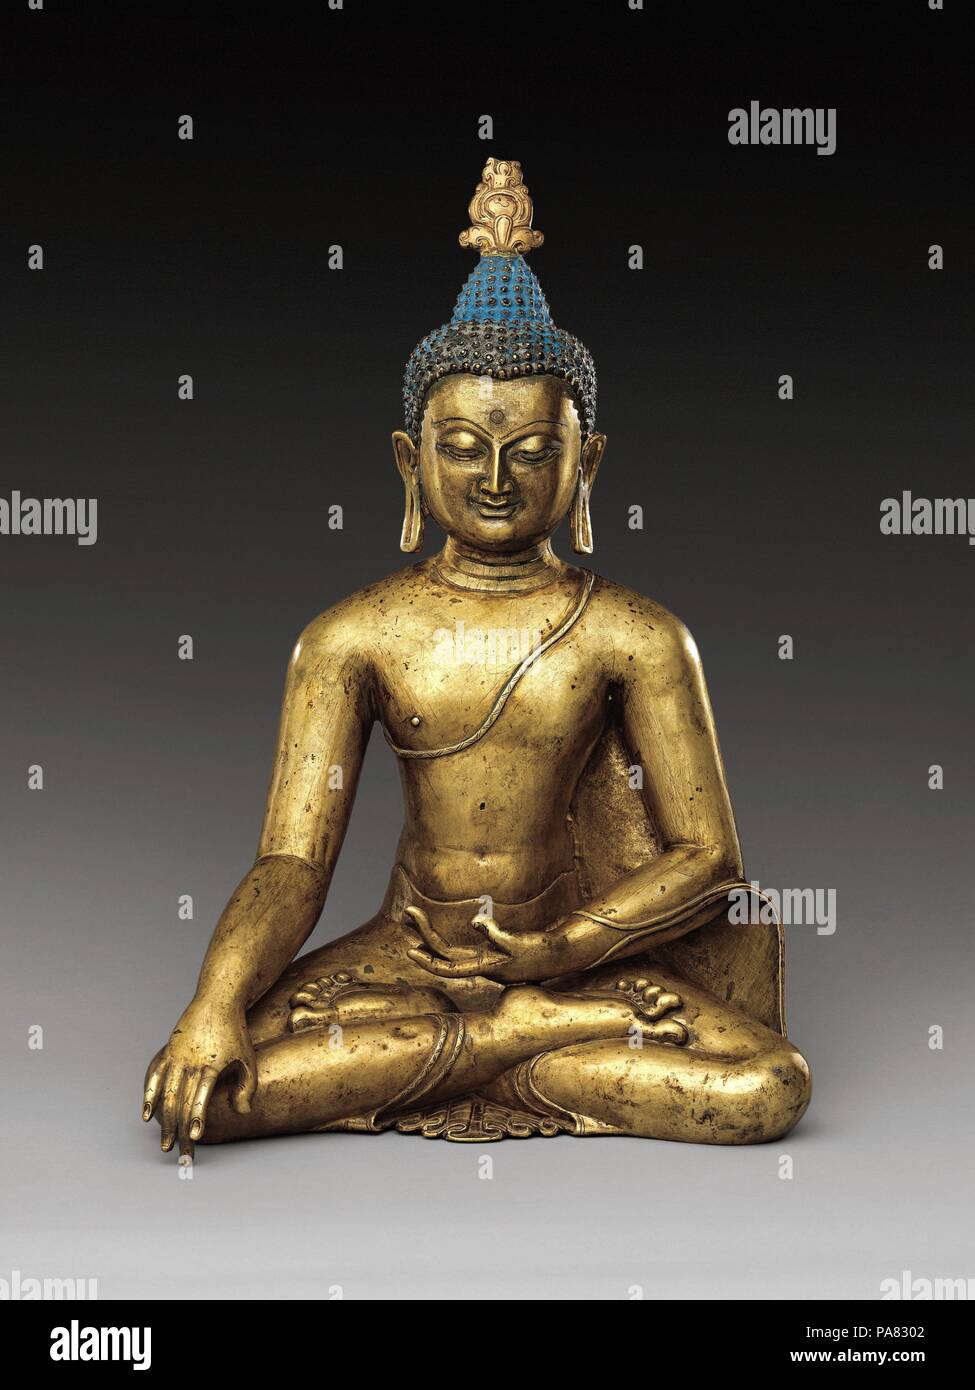 Buddha Sakyamuni. Cultura: Tibet Centrale. Dimensioni: H. 15 1/2 in. (39,4 cm); W. 10 7/16 in. (26,5 cm); D. 8 5/8 in. (21,9 cm). Data: ca. Xii secolo. Questa è una sublime e rara raffigurazione tibetana del Buddha storico. Seduti in meditazione yogiche, egli i gesti per la terra a testimoniare il momento della sua illuminazione. Egli mostra segni di buon auspicio di buddhità (lakshanas), compreso il orecchioni estesa, fronte mark e protuberanza del cranio. Le sottili sfumature di espressione facciale e articolata dita delle mani e dei piedi di aggiungere una dimensione umana per questo altrimenti piuttosto astratto e ethereal Buddha im Foto Stock